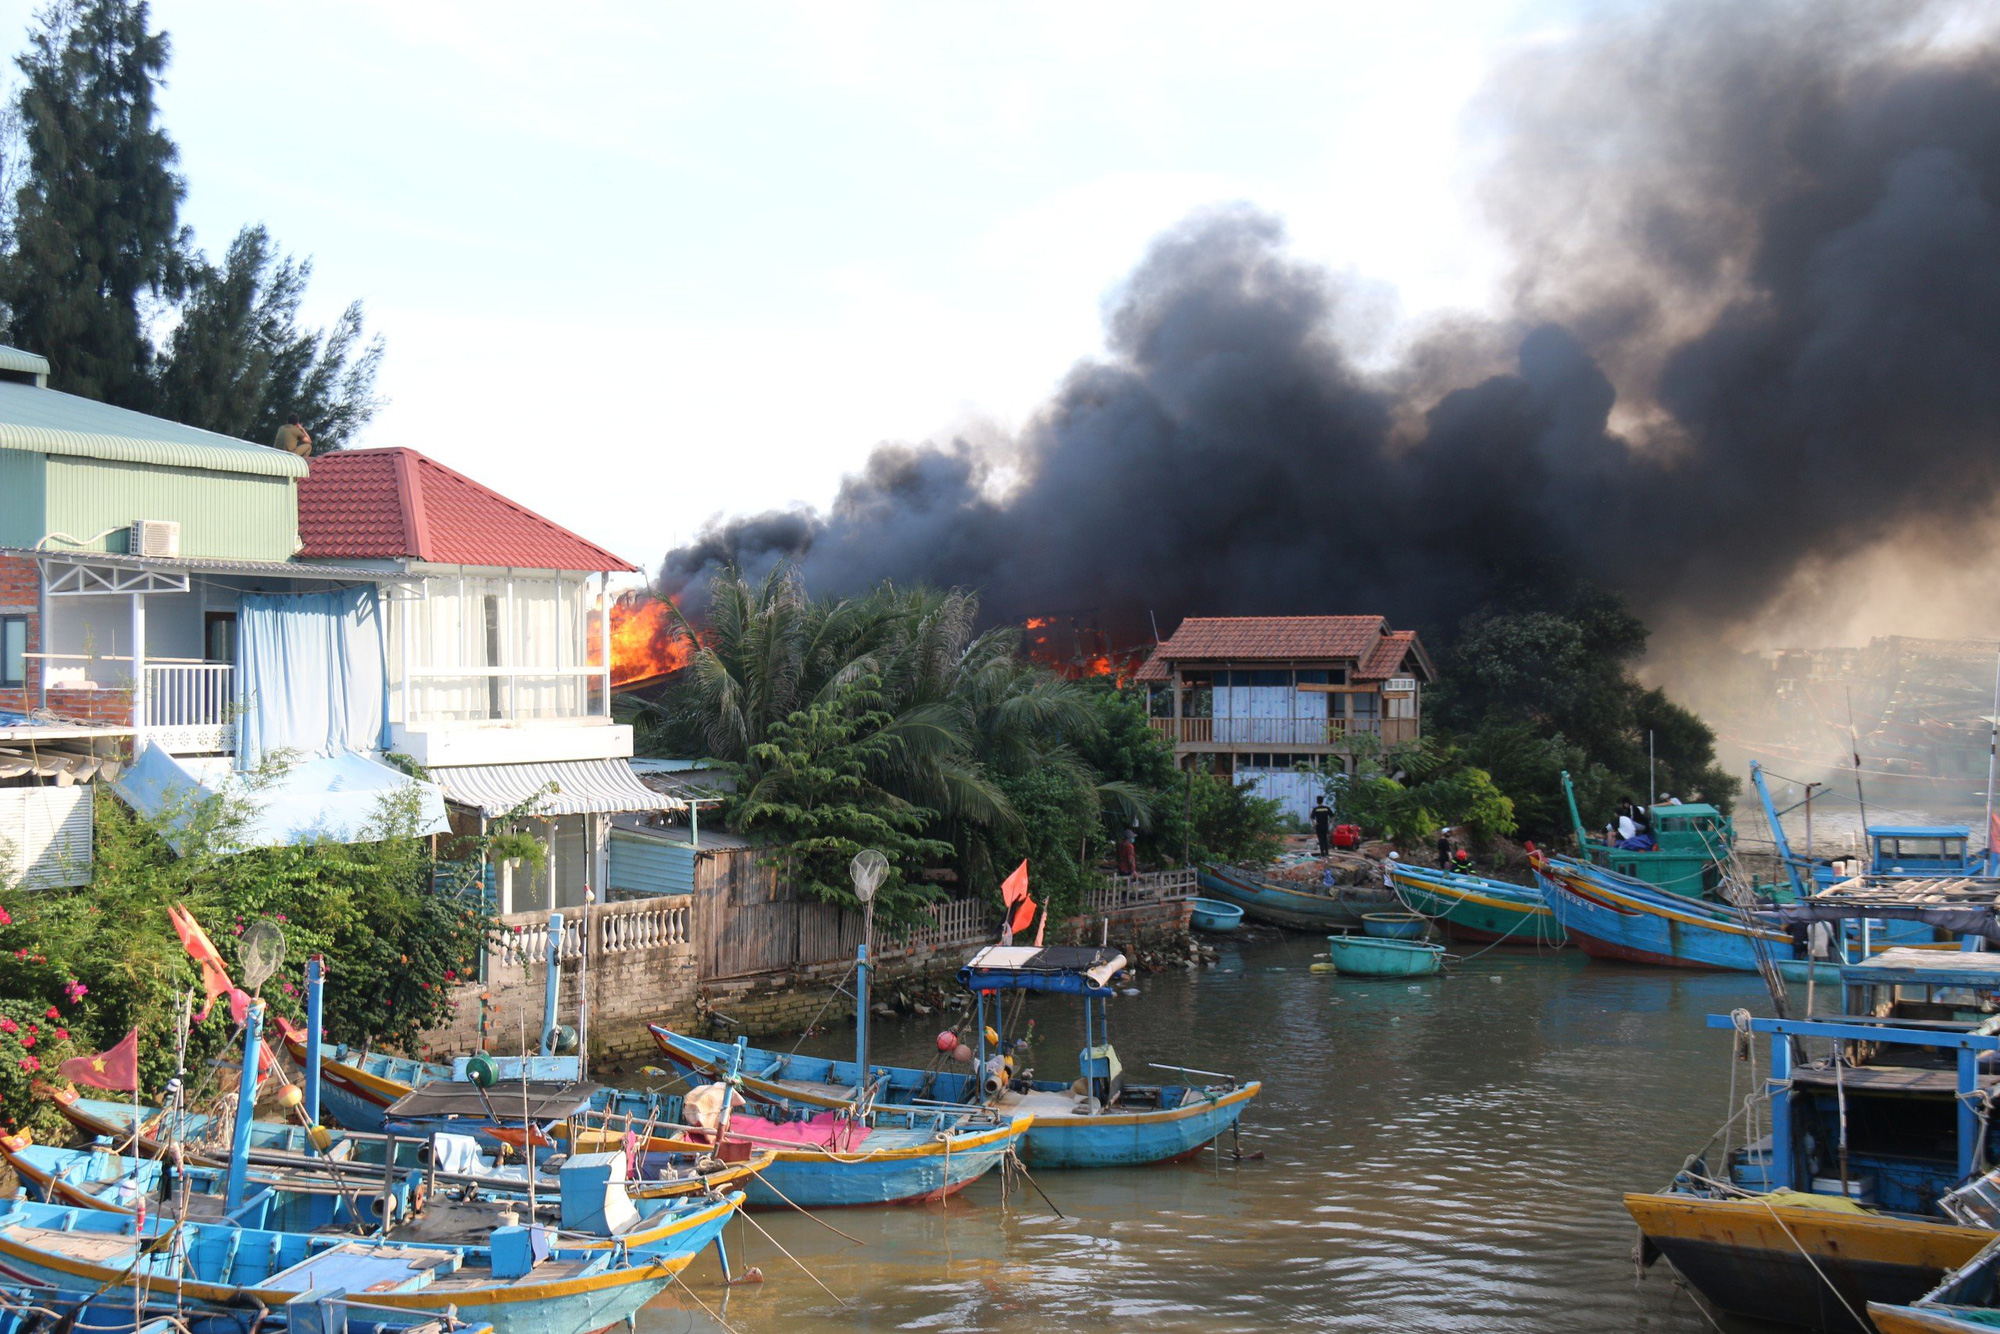 Hiện trường vụ cháy 11 tàu cá ở TP Phan Thiết chiều 7-12 - Ảnh: MAI THỨC